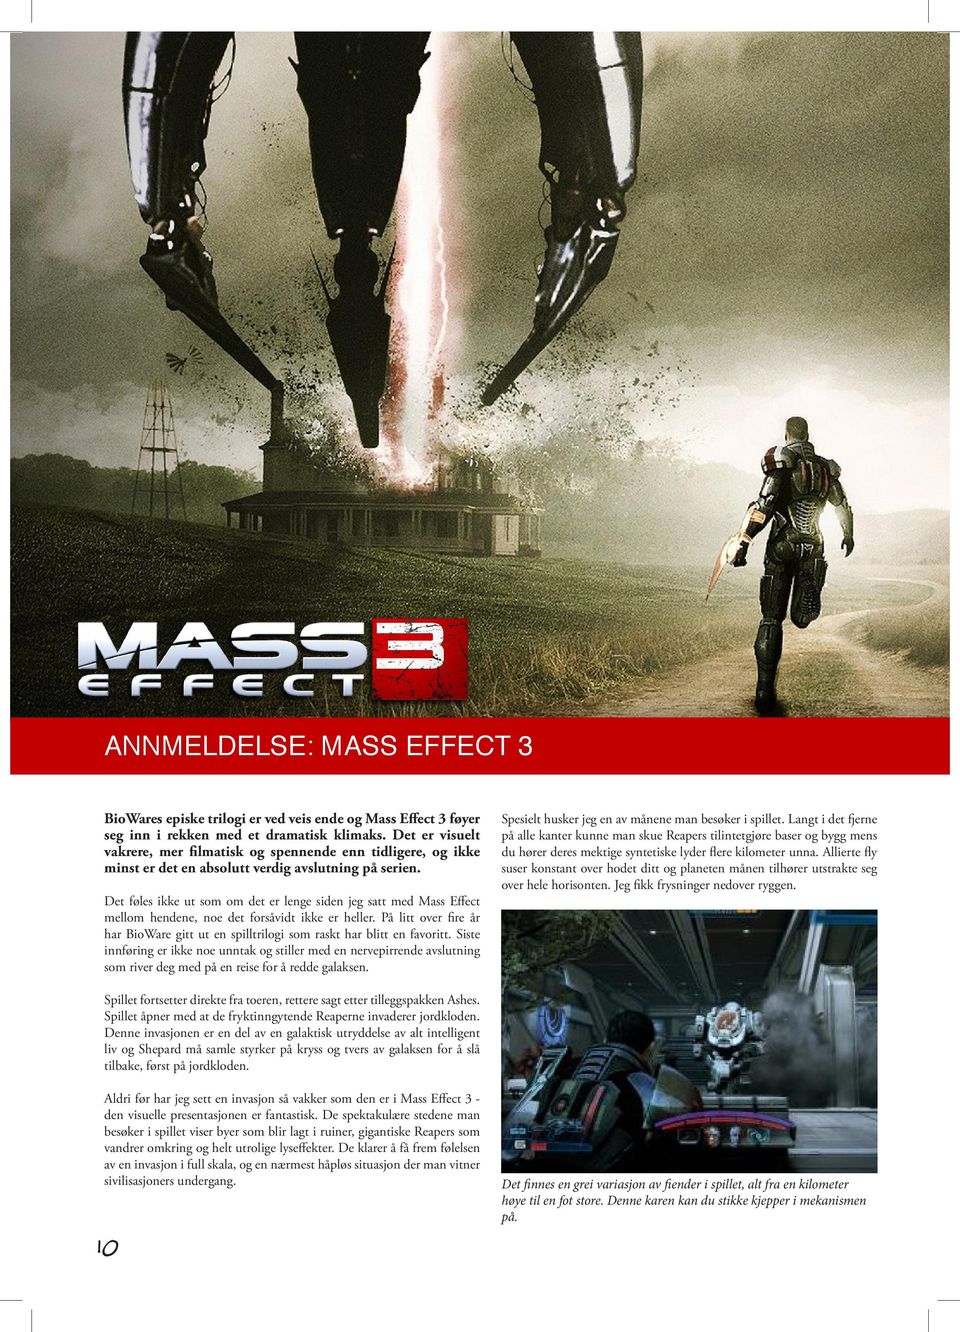 Det føles ikke ut som om det er lenge siden jeg satt med Mass Effect mellom hendene, noe det forsåvidt ikke er heller.